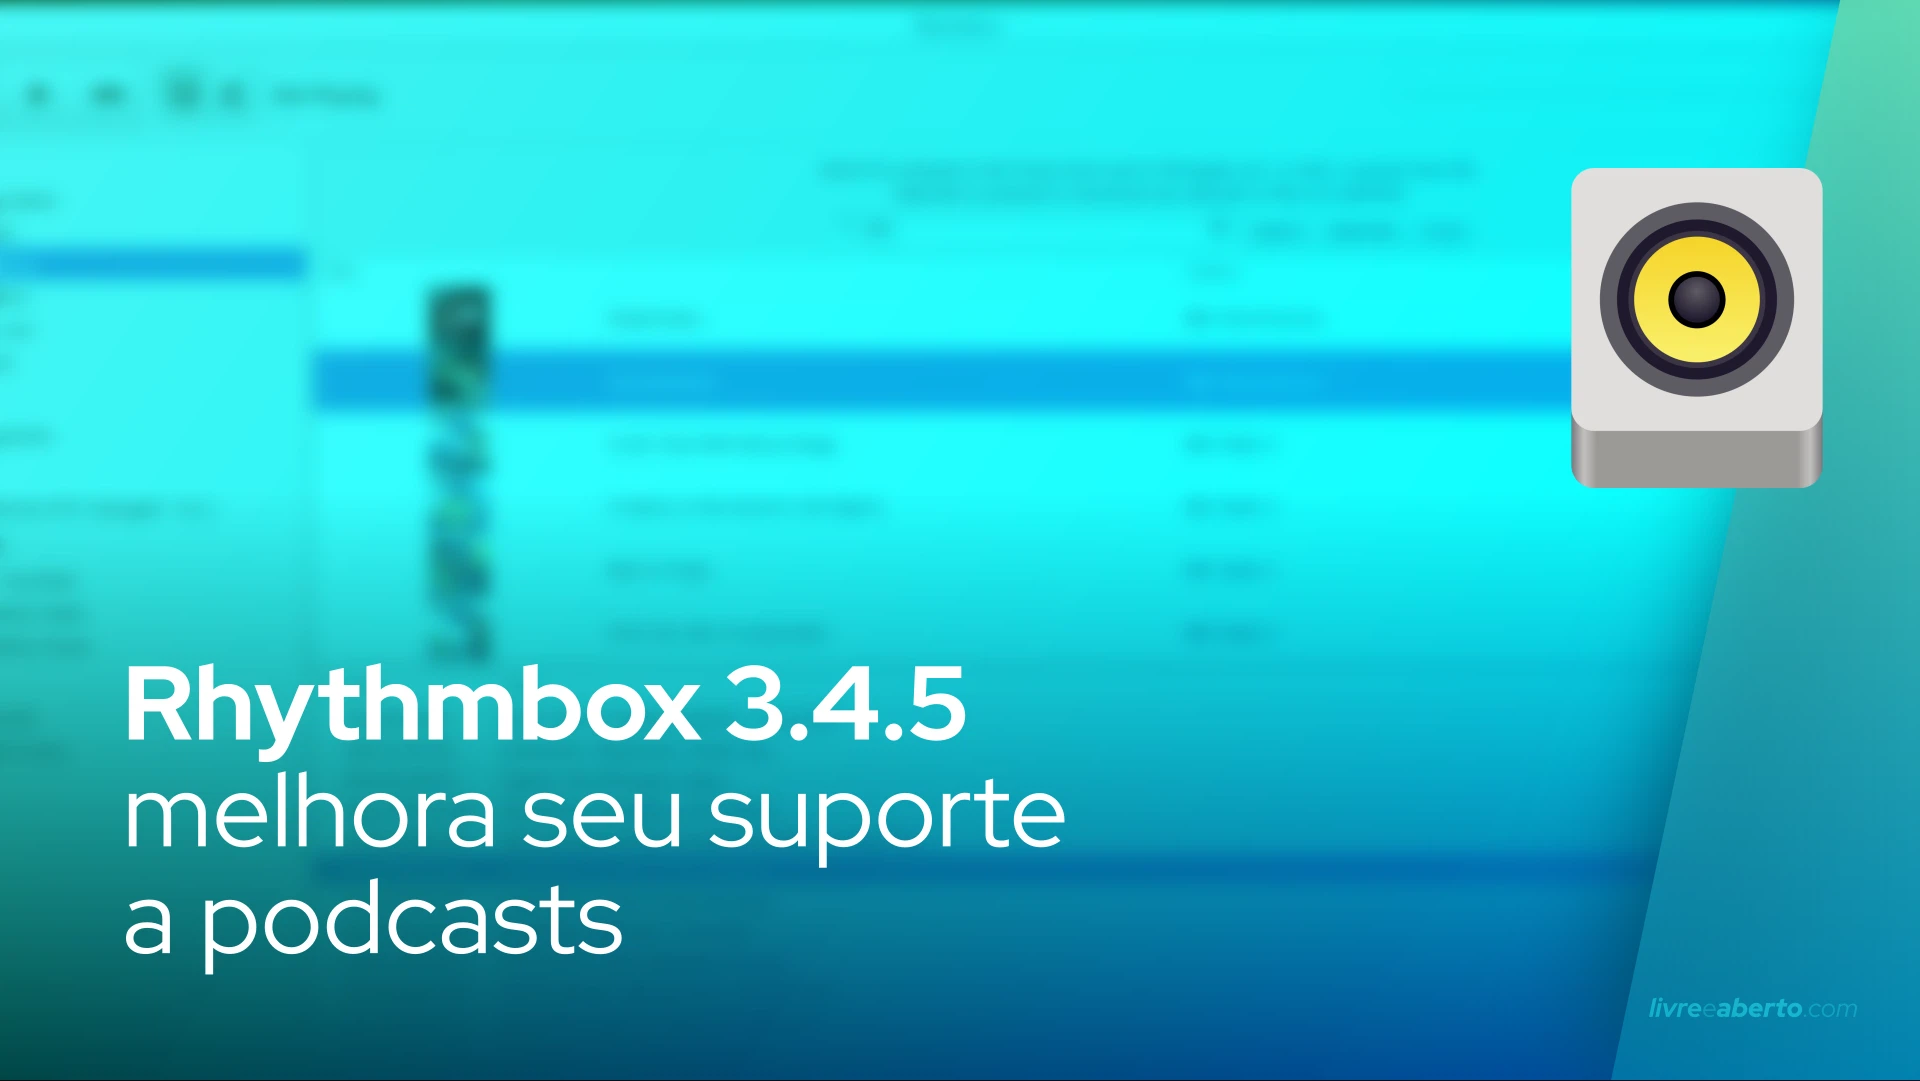 Rhythmbox 3.4.5 melhora seu suporte a podcasts